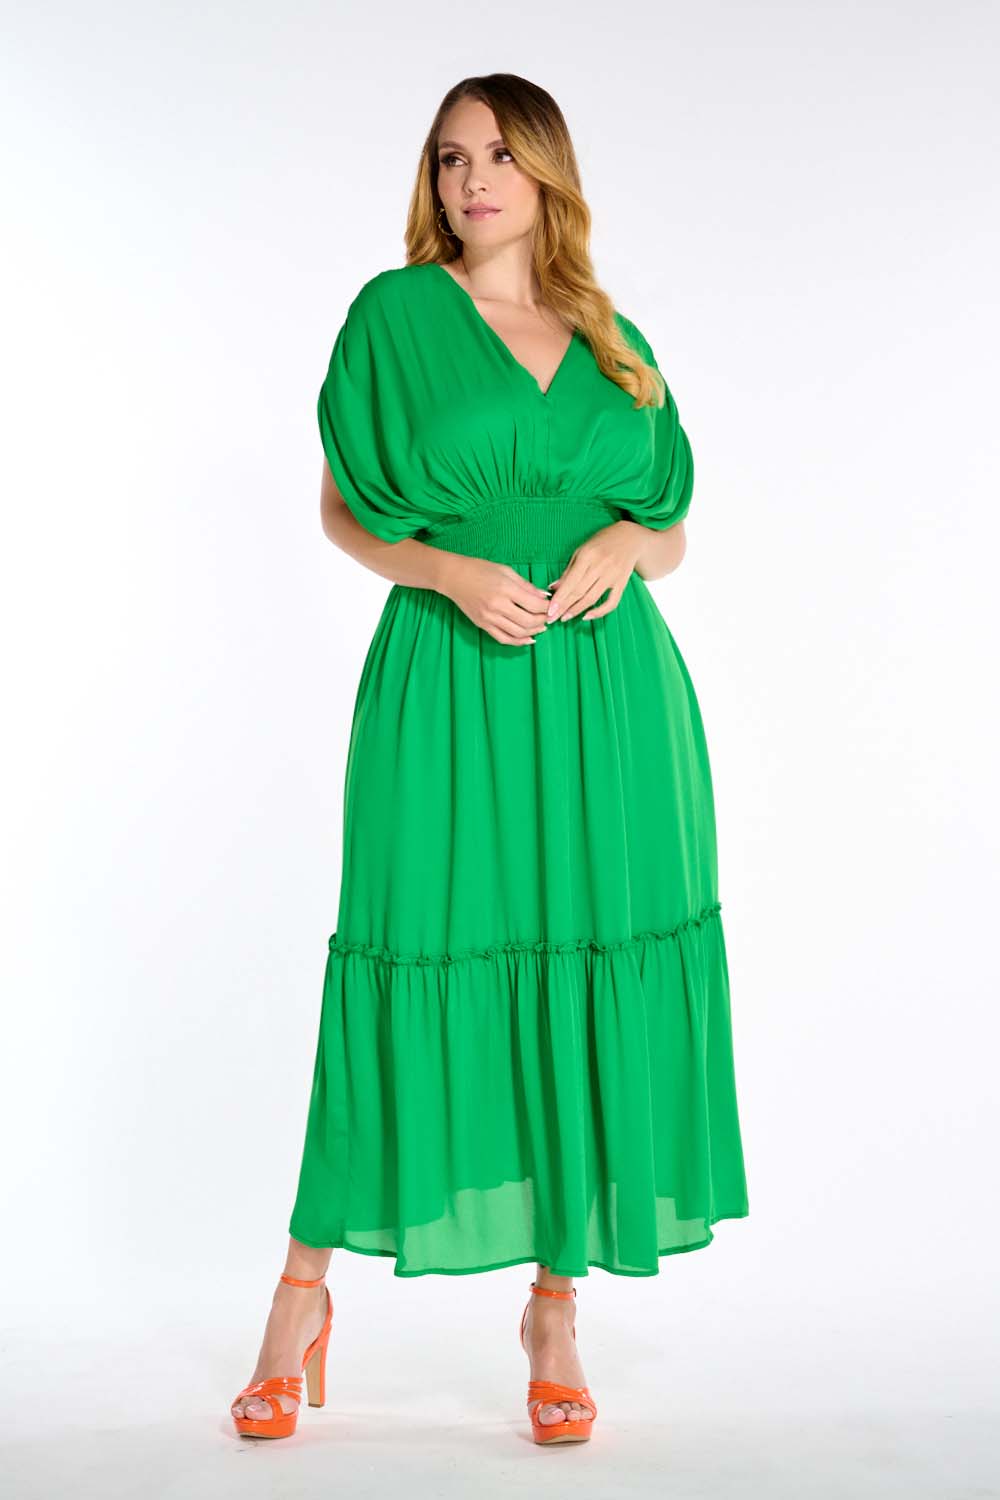 Vestido Color Verde Para Dama Mundo Terra